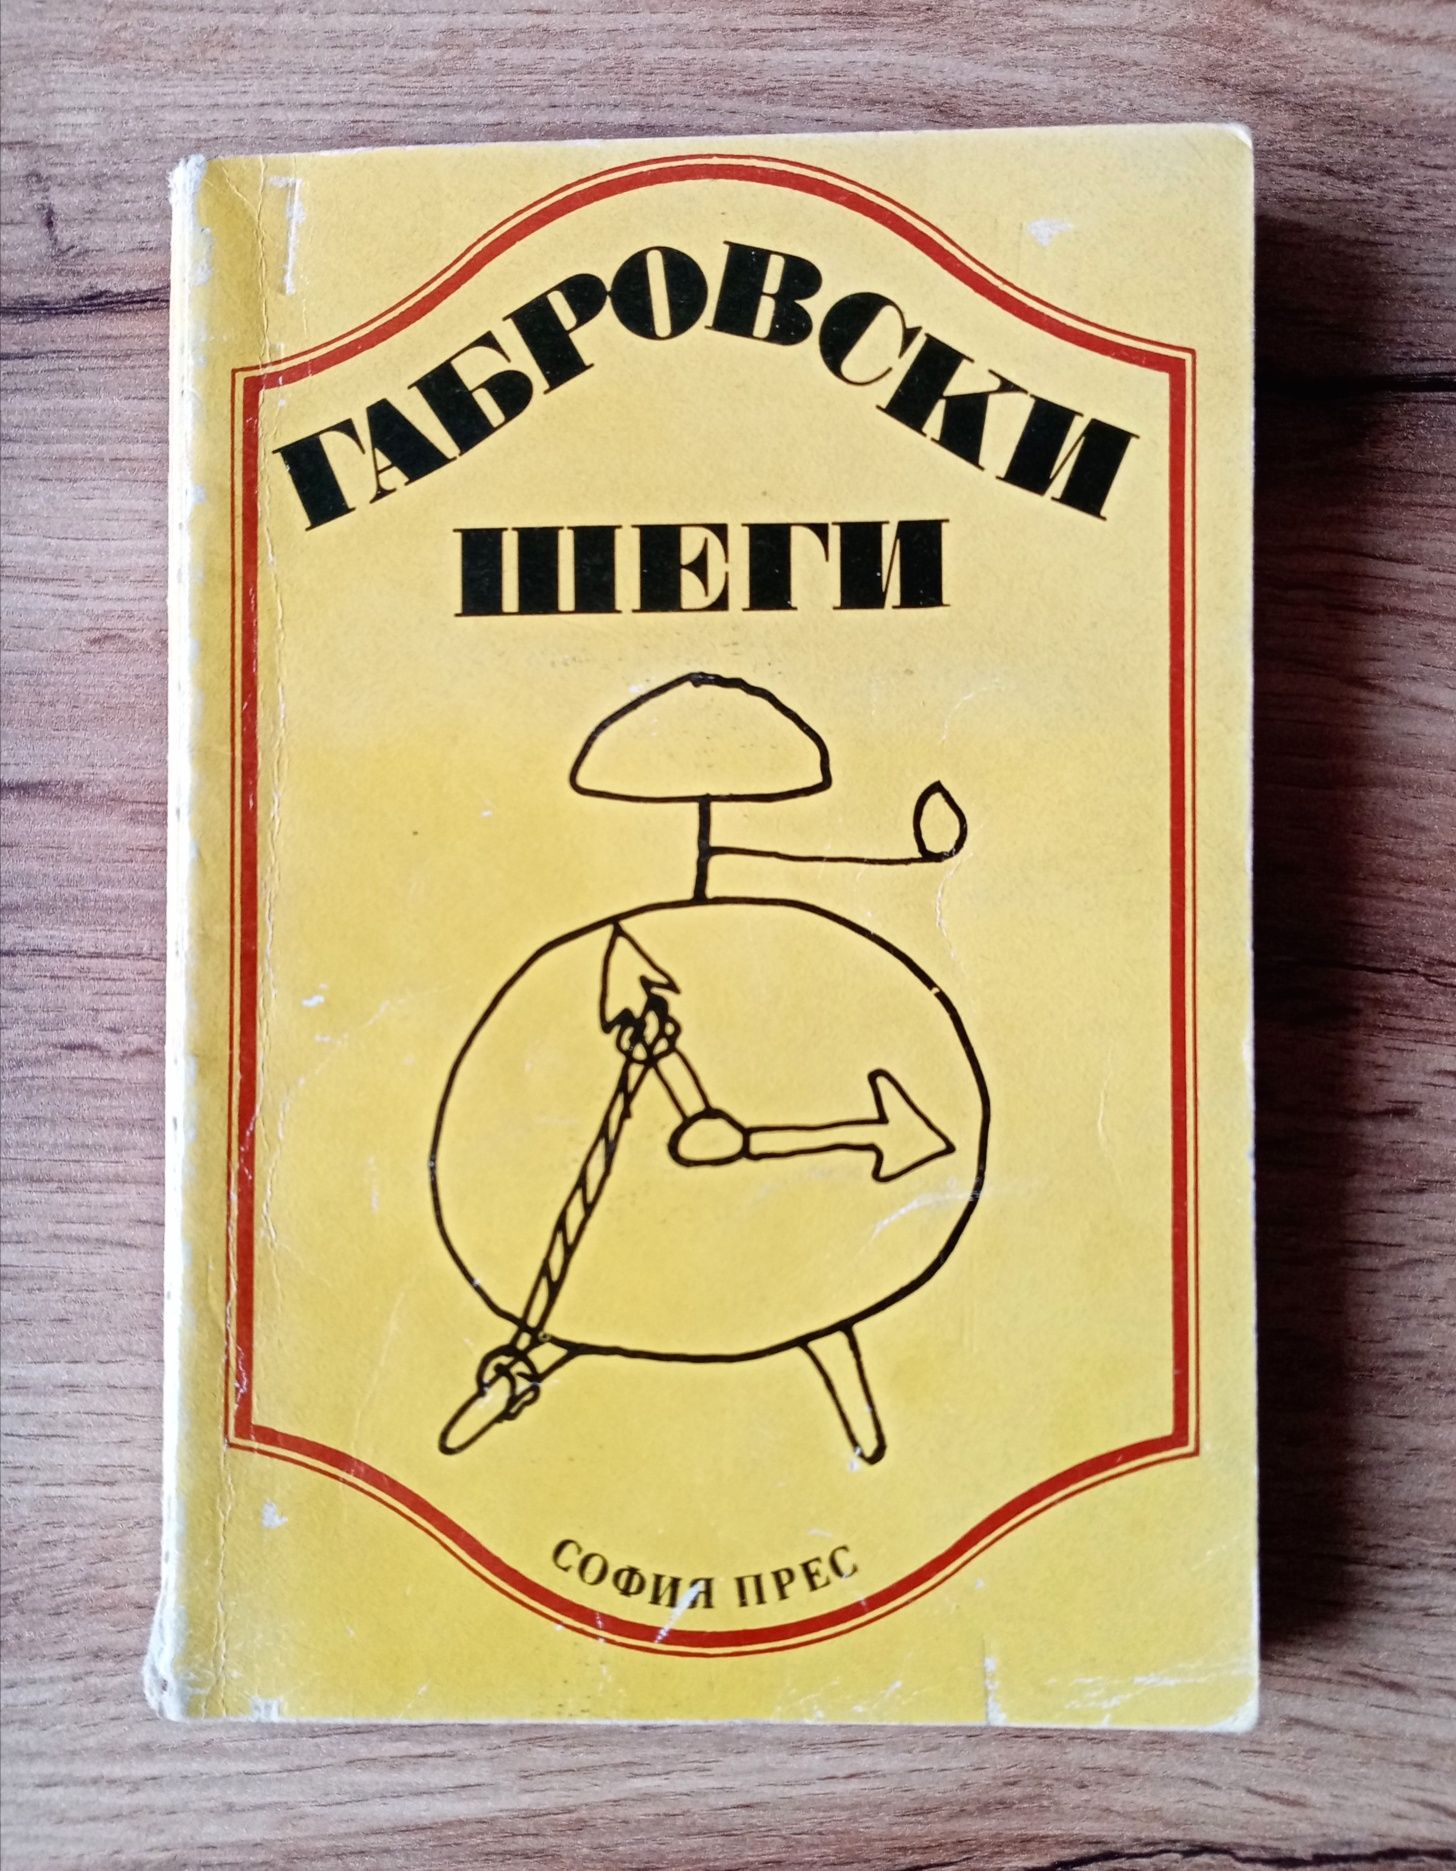 Габровски шеги, издание 1978 година